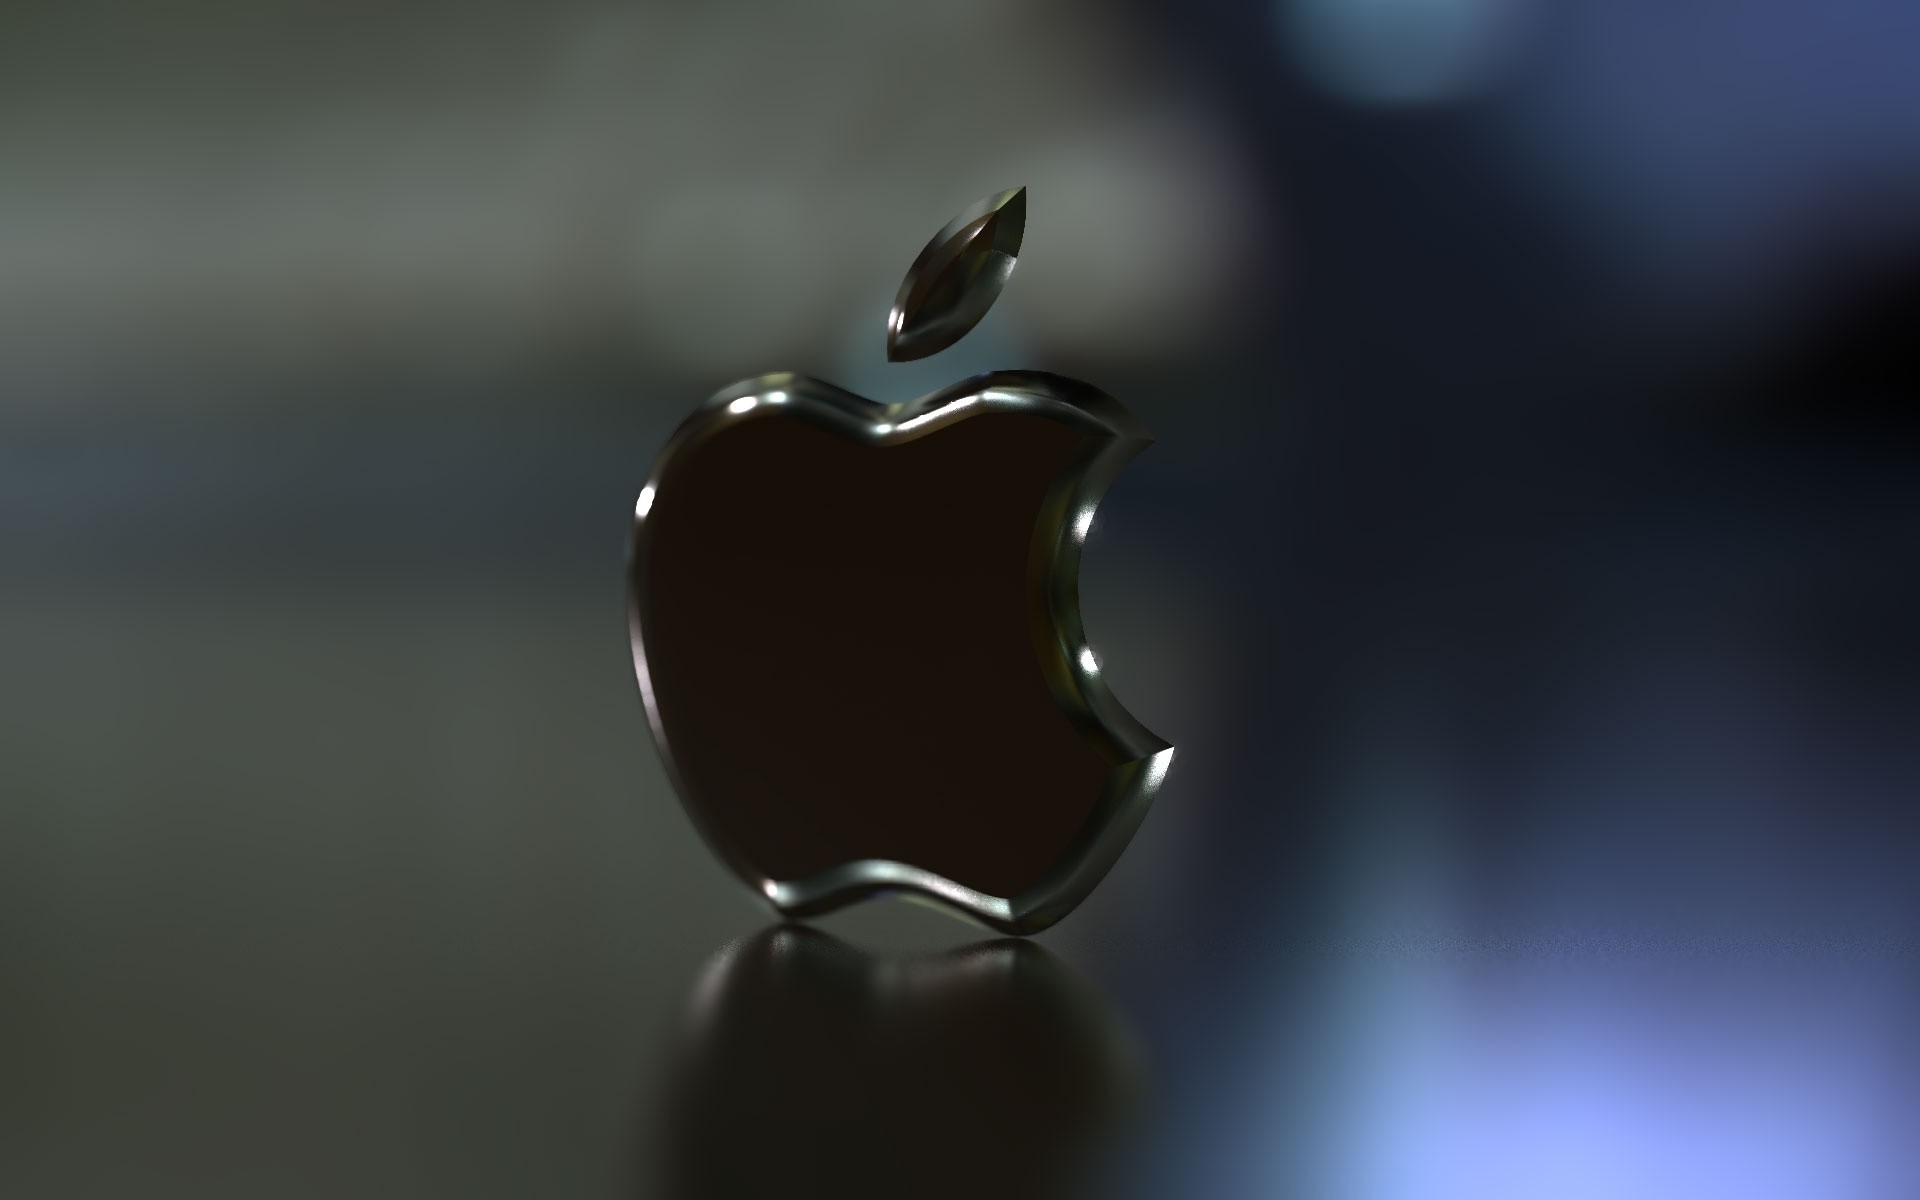 Обои на айфон яблоко. Обои Apple. Логотип Apple. Заставка Apple. Обои на айфон.